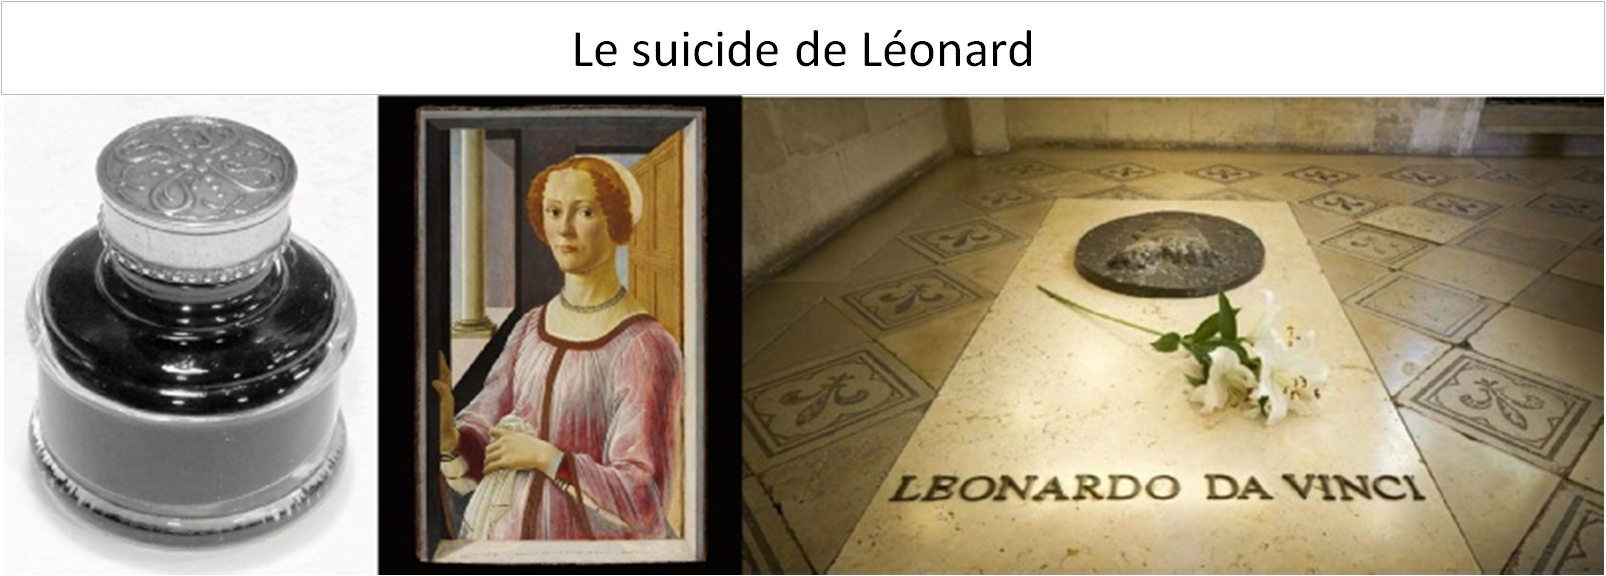 Le suicide de Léonard de Vinci